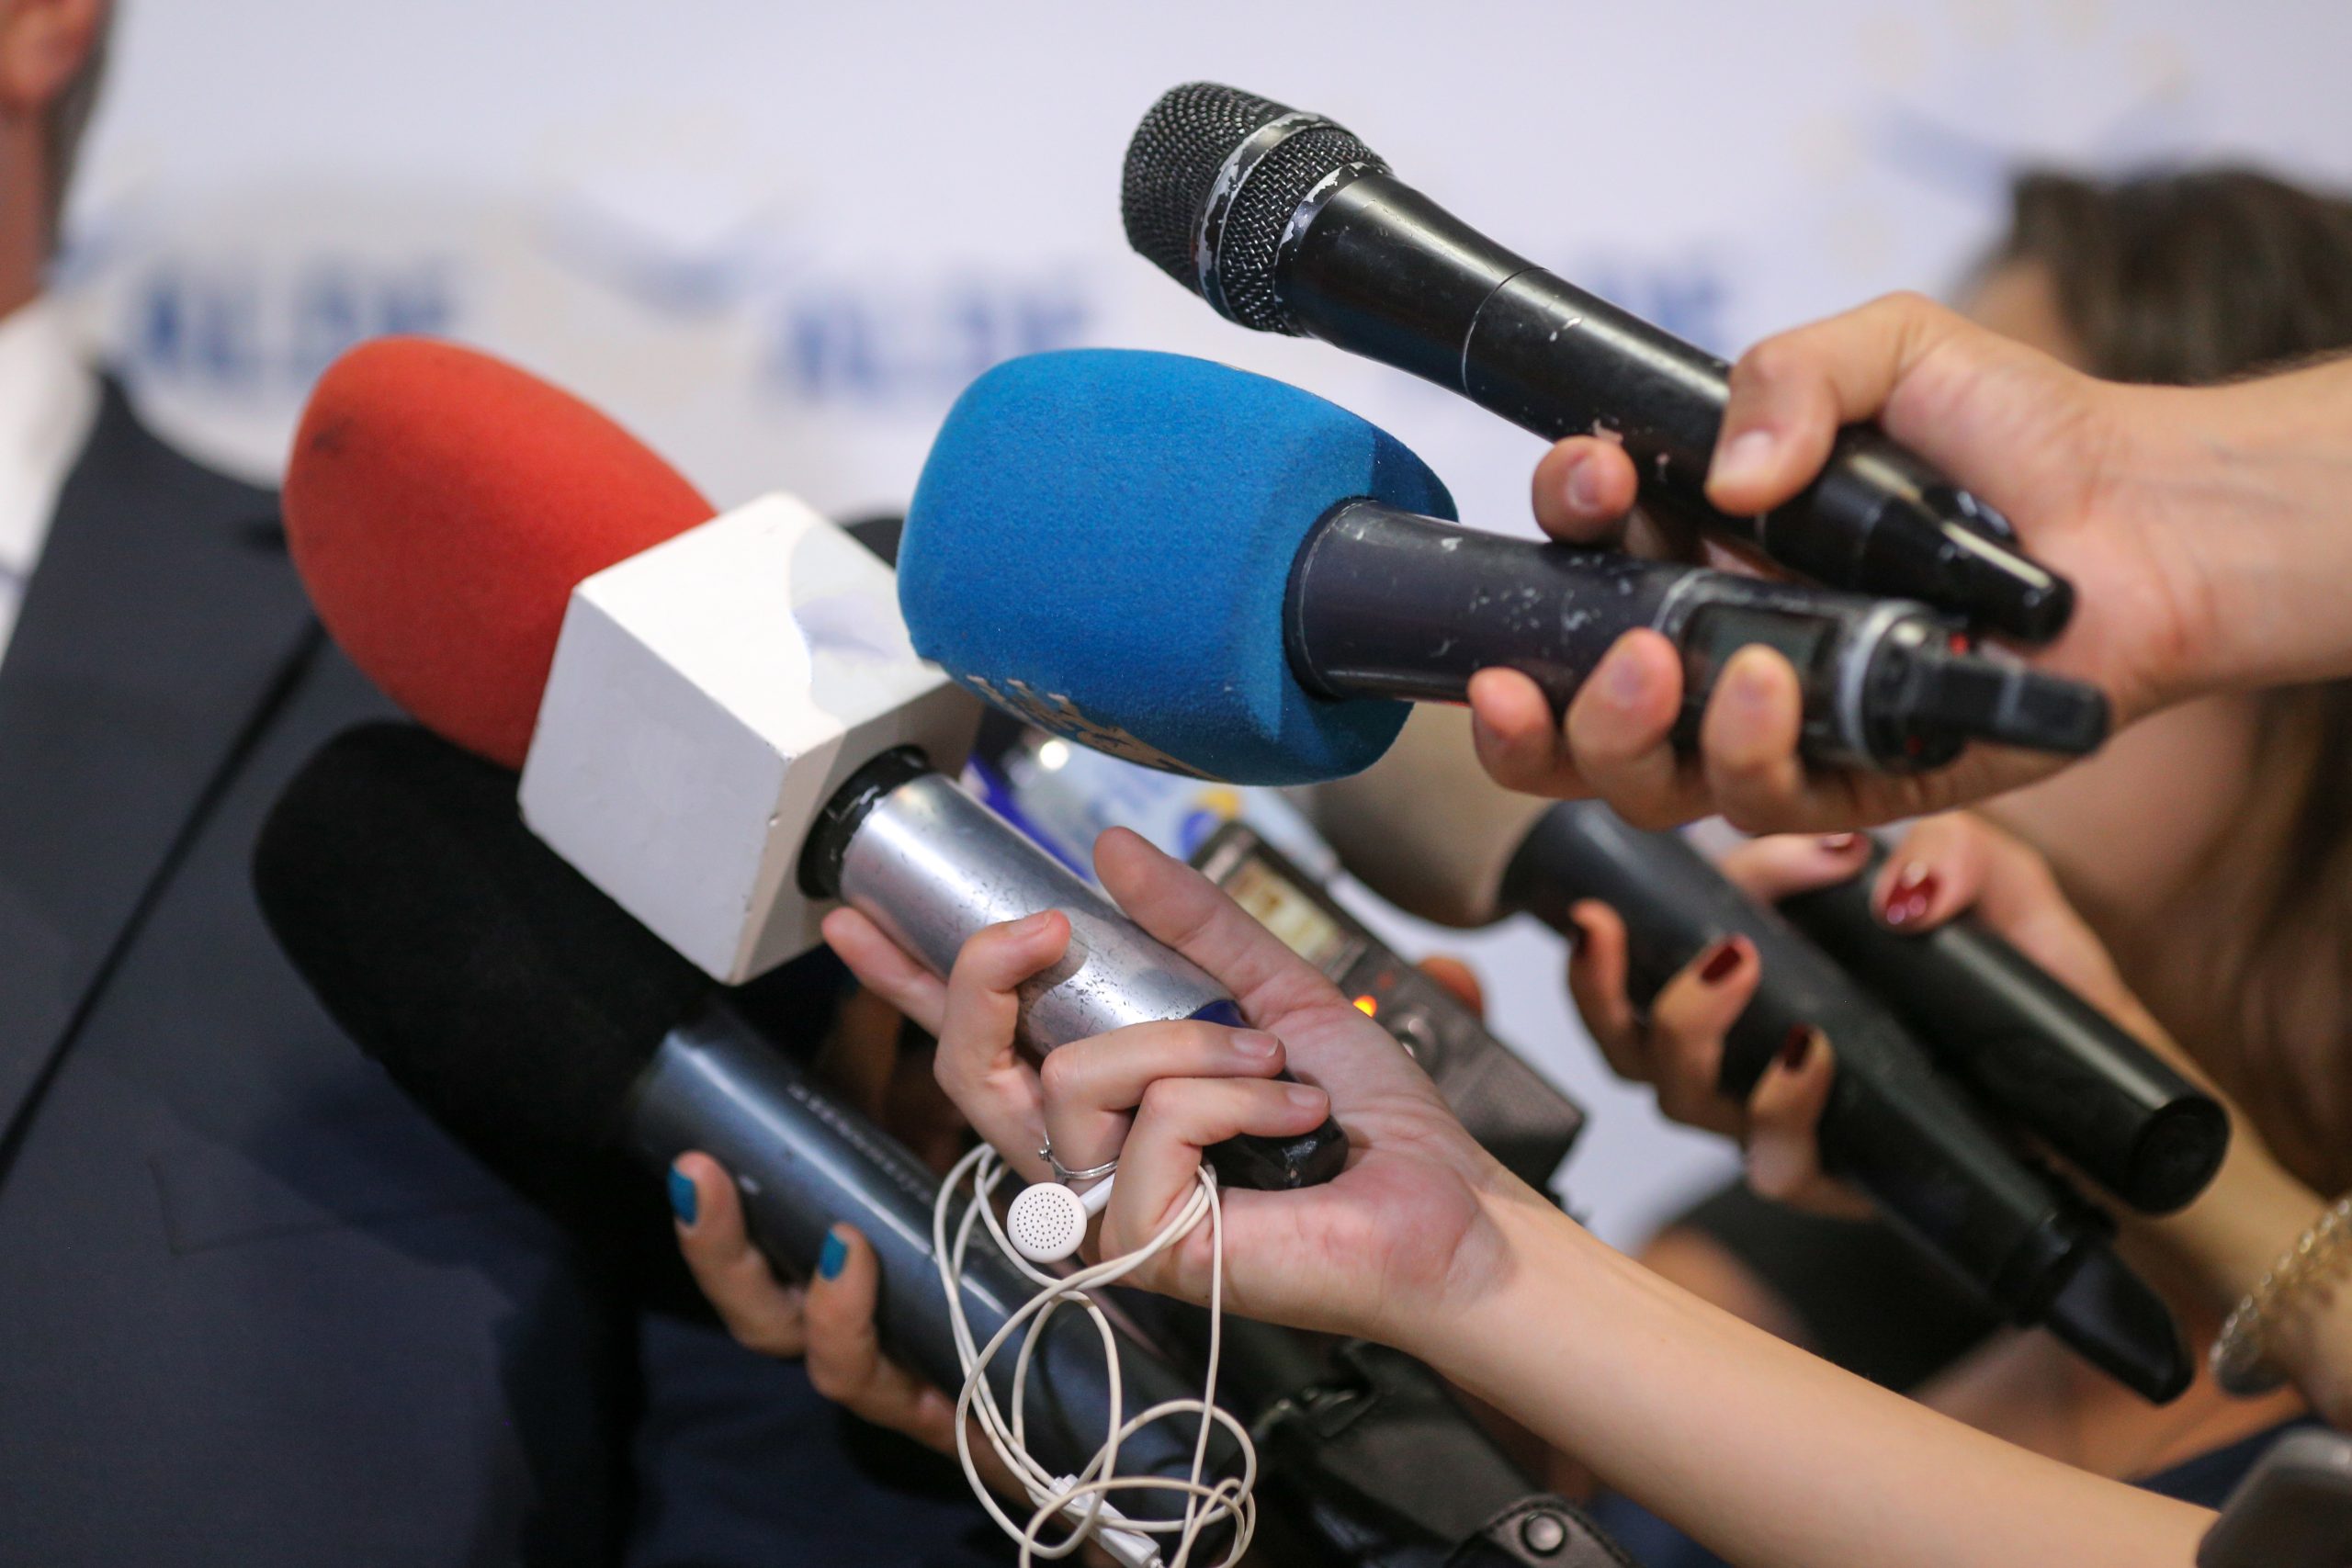 ERC assinala “gravidade” de vigilância a jornalistas e pede medidas ao MP